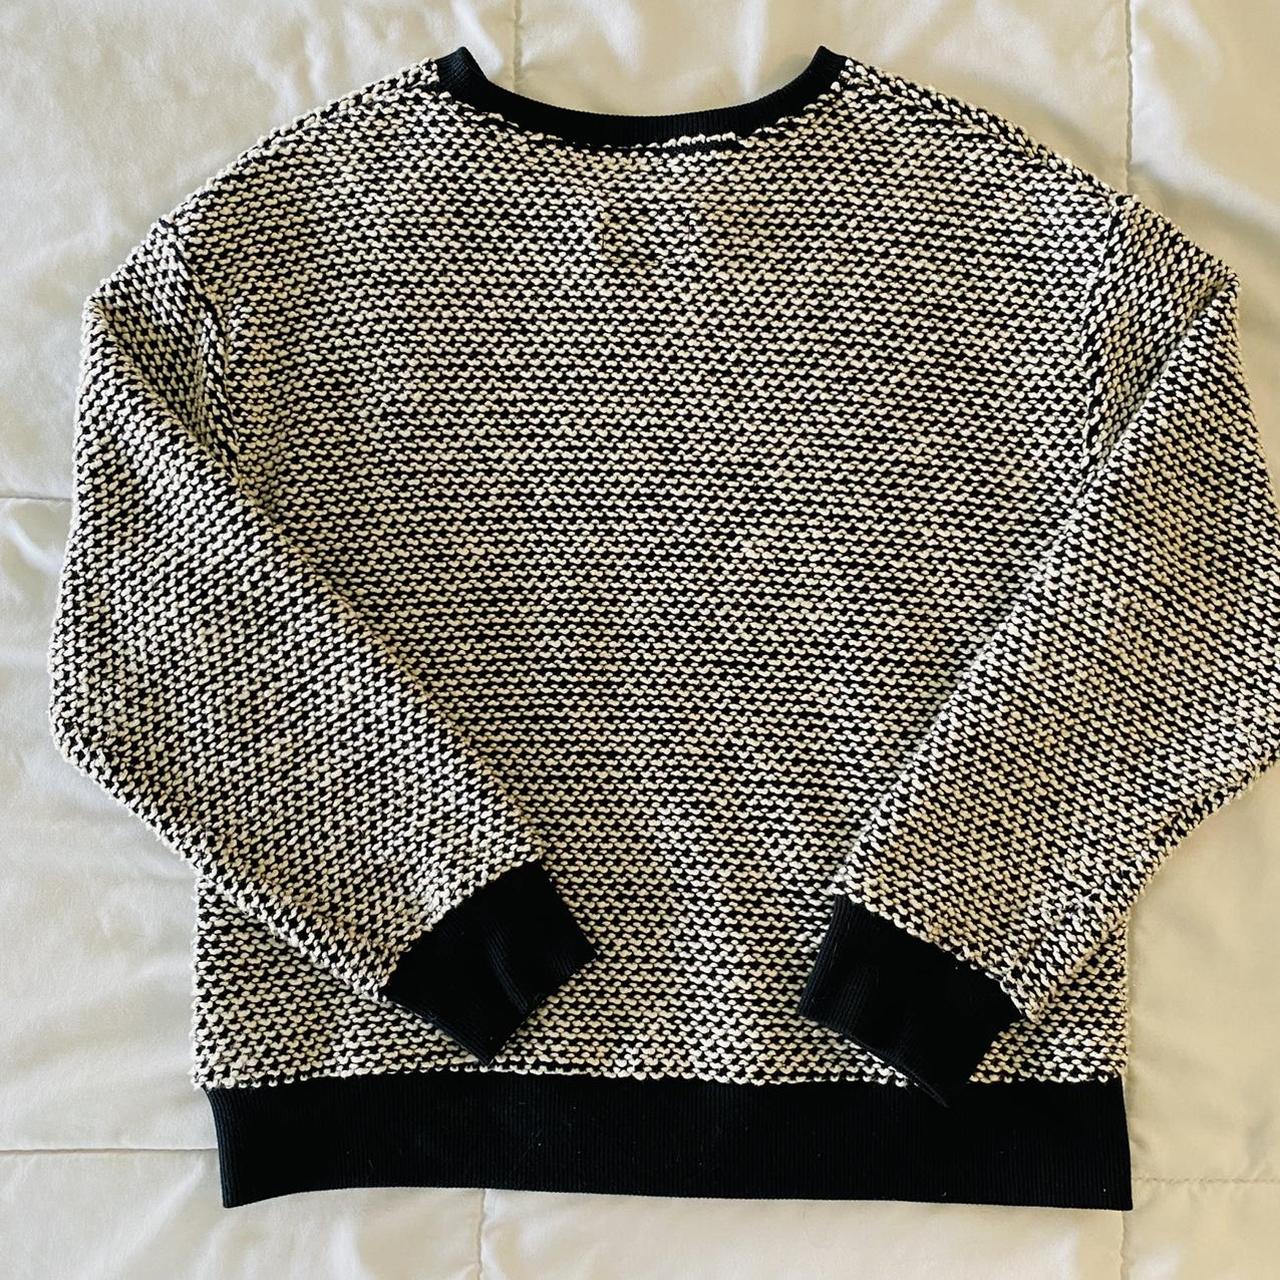 Product Image 4 - Marine Layer Birdseye Sweater. Size